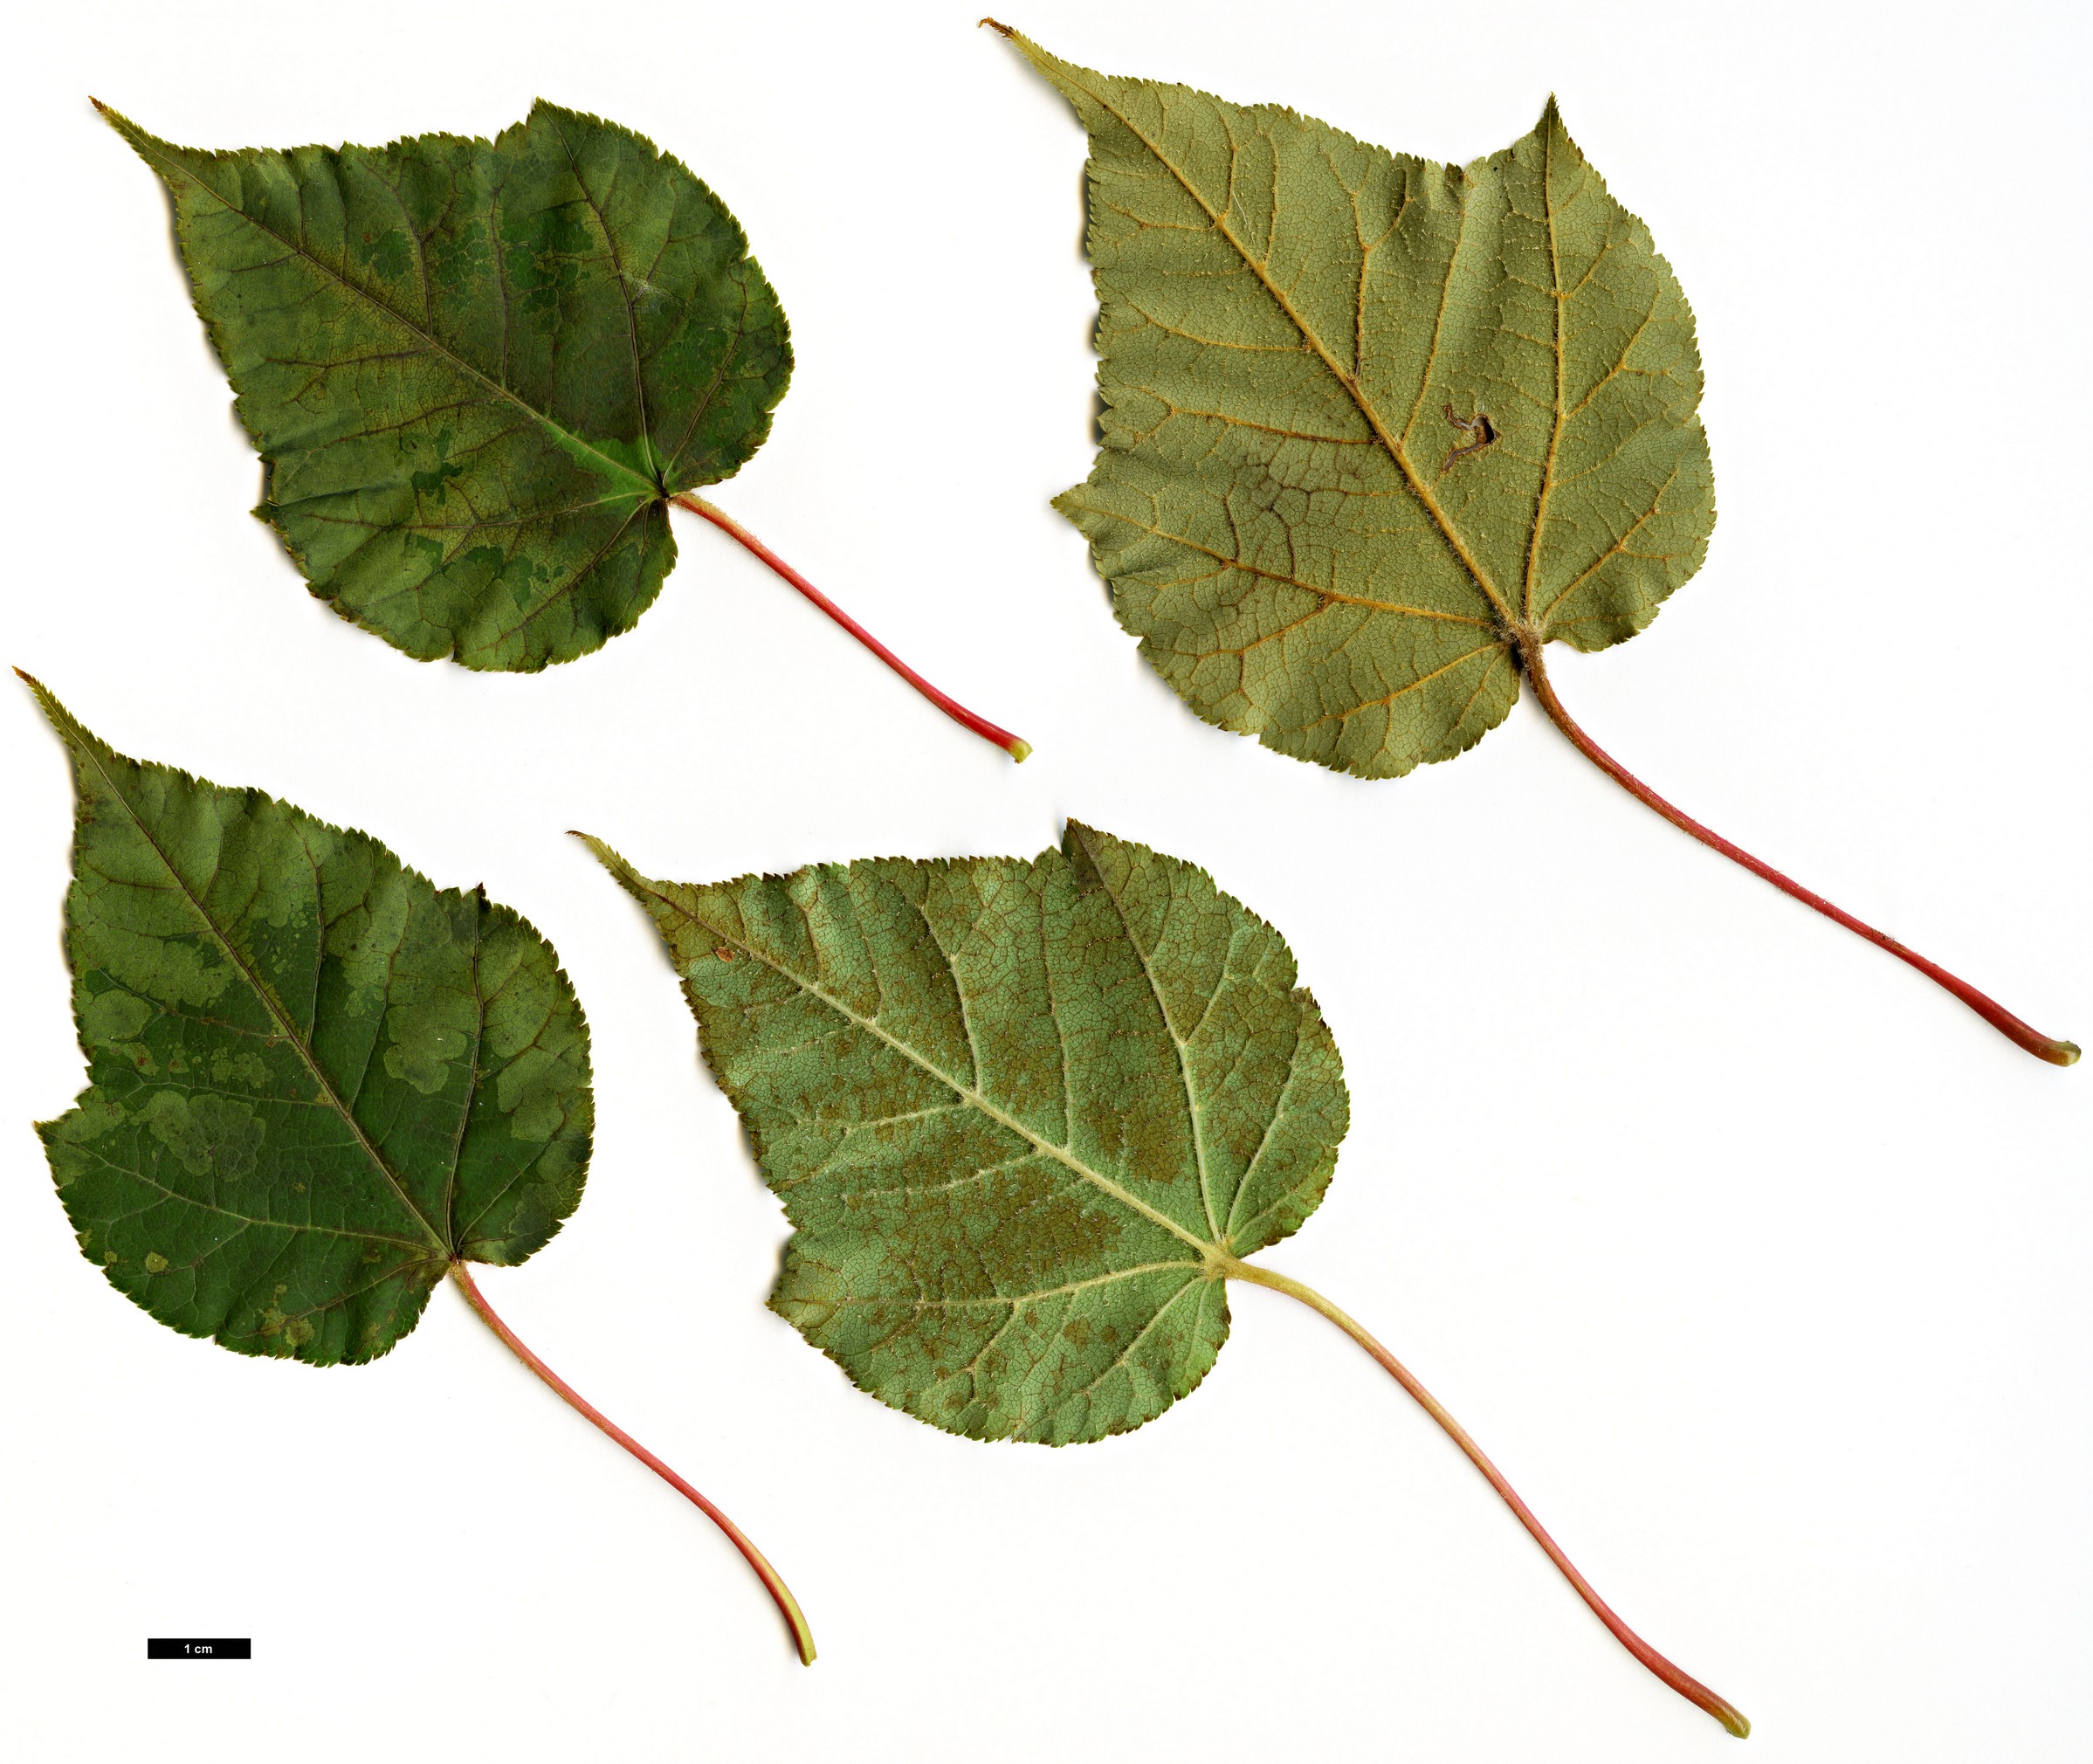 High resolution image: Family: Sapindaceae - Genus: Acer - Taxon: laxiflorum - SpeciesSub: var. longilobum